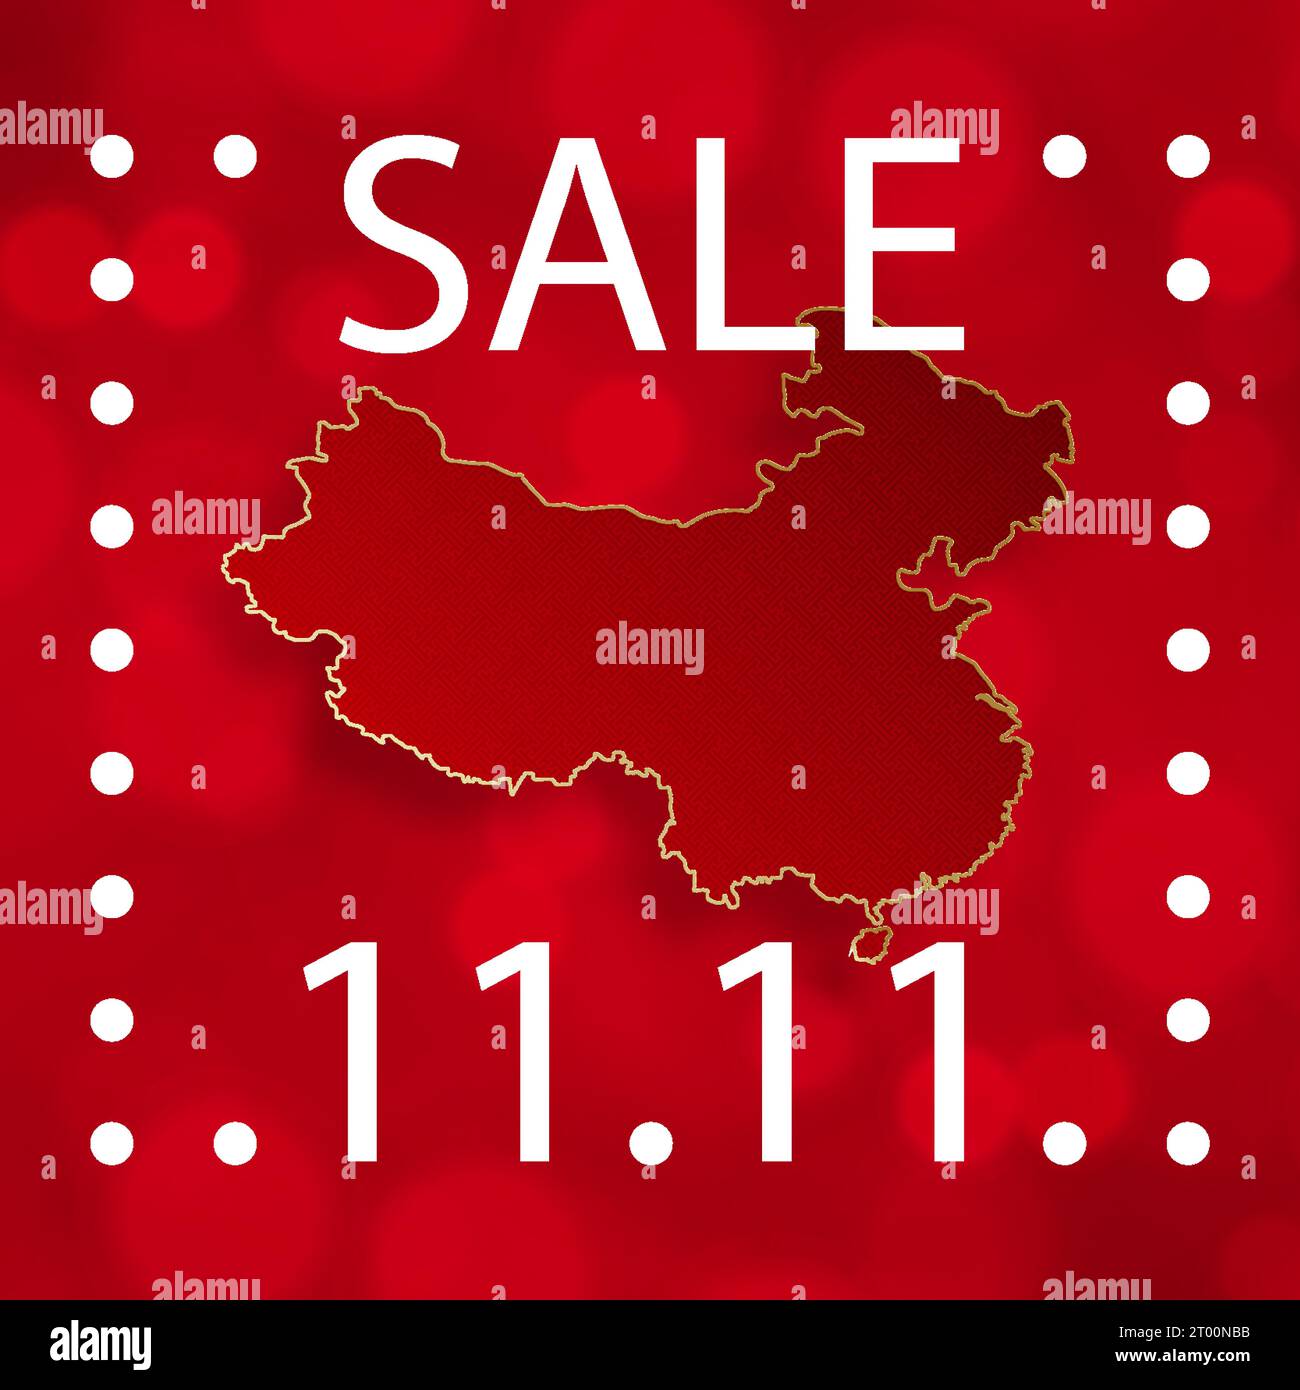 11,11 Chinesisches Einkaufstag Verkaufsposter mit Goldpapier geschnittene Kunst und Craft-Stil auf farbigem Hintergrund mit asiatischen Elementen für die globale Einkaufswelt s Stock Vektor